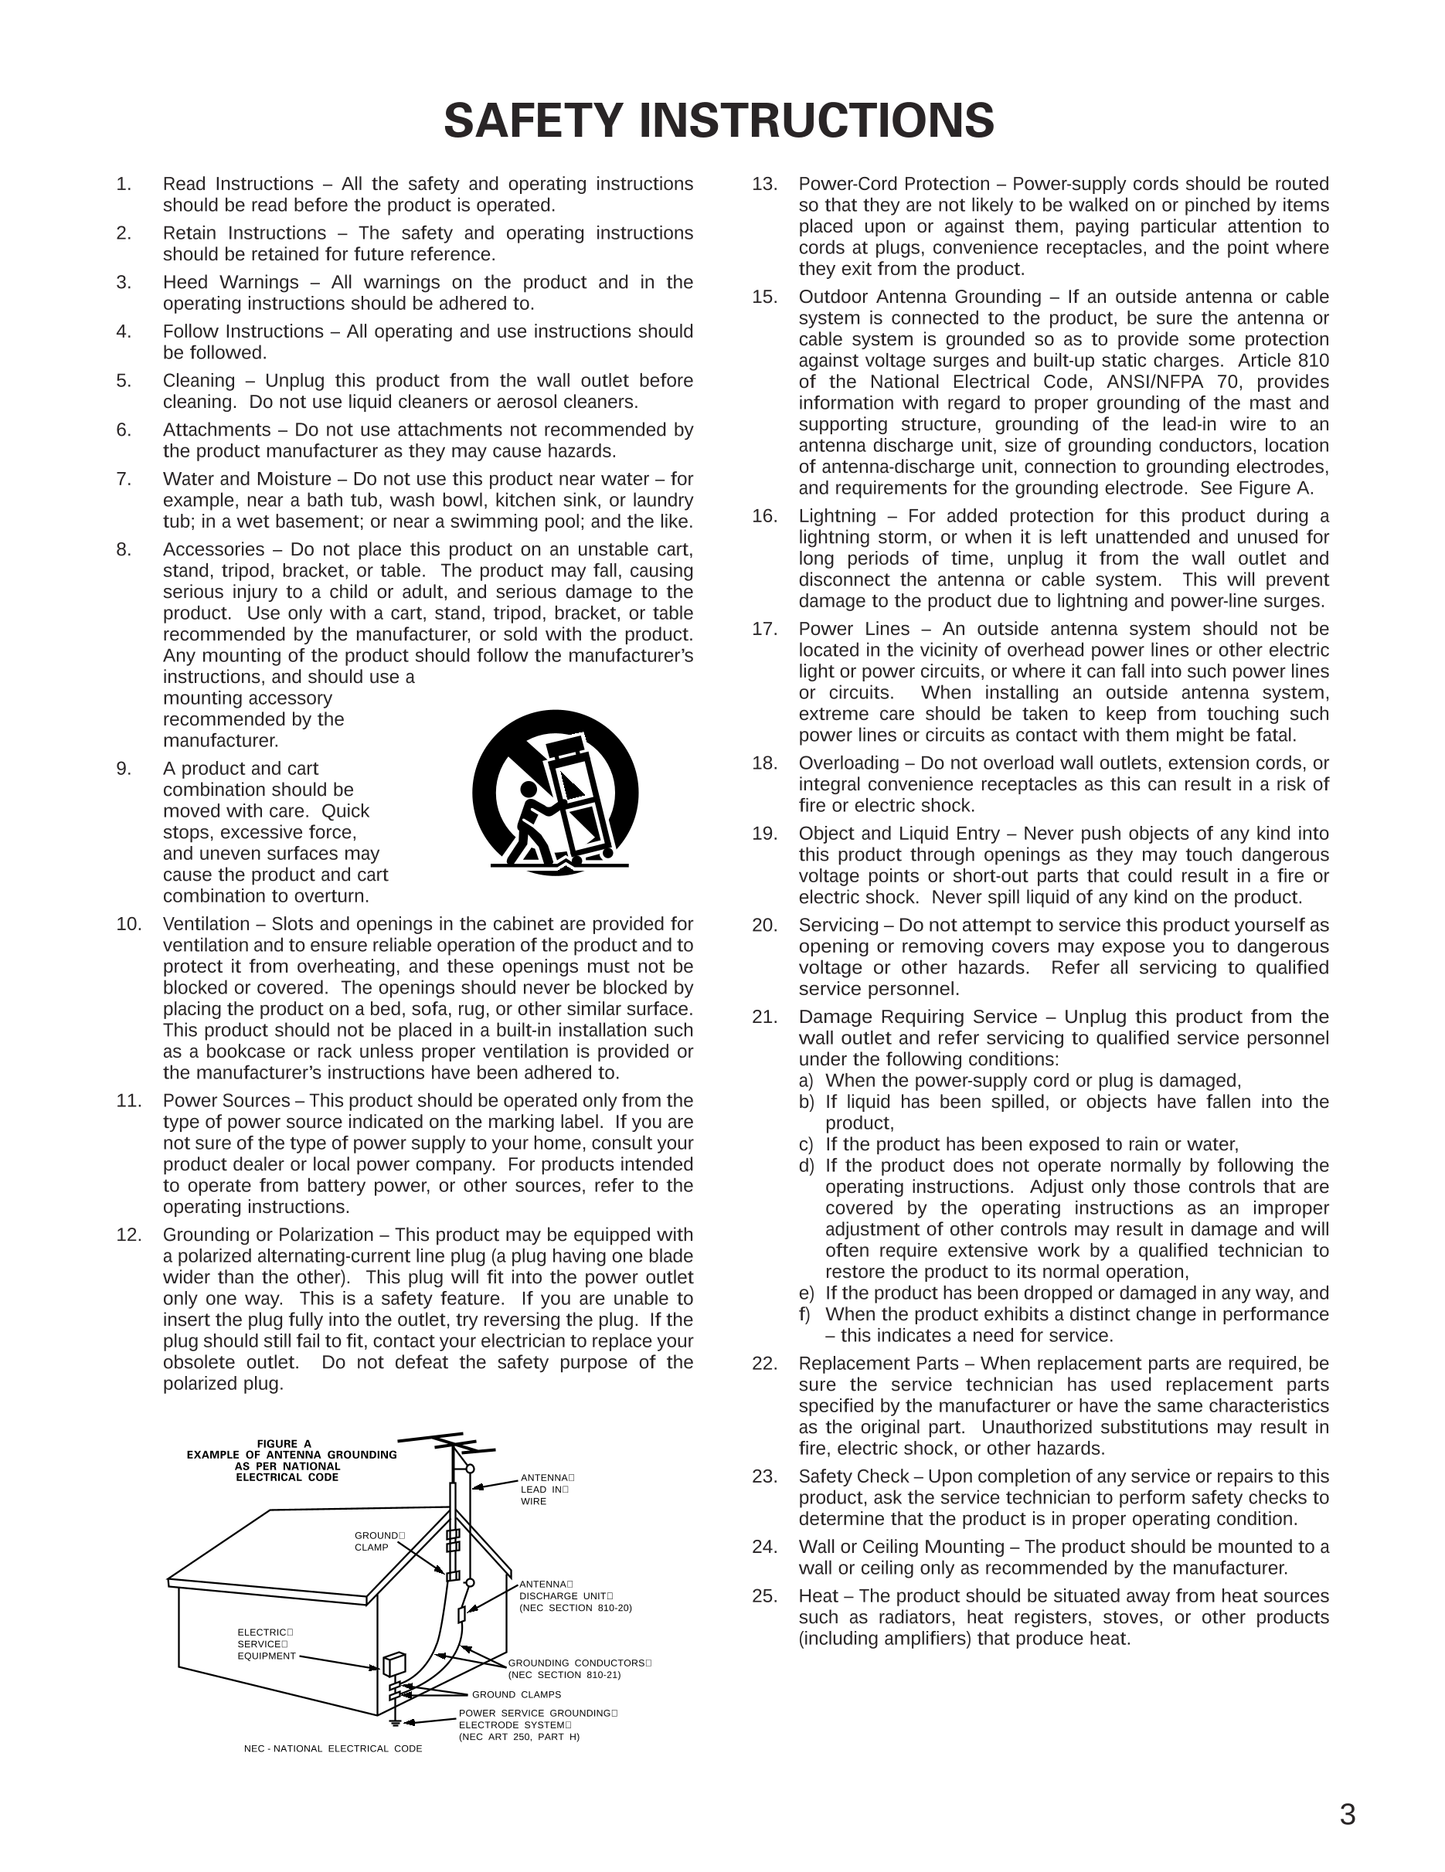 Denon AVR-1905 & AVR-785 AV Receiver Owner's/ User Manual (Pages: 77)